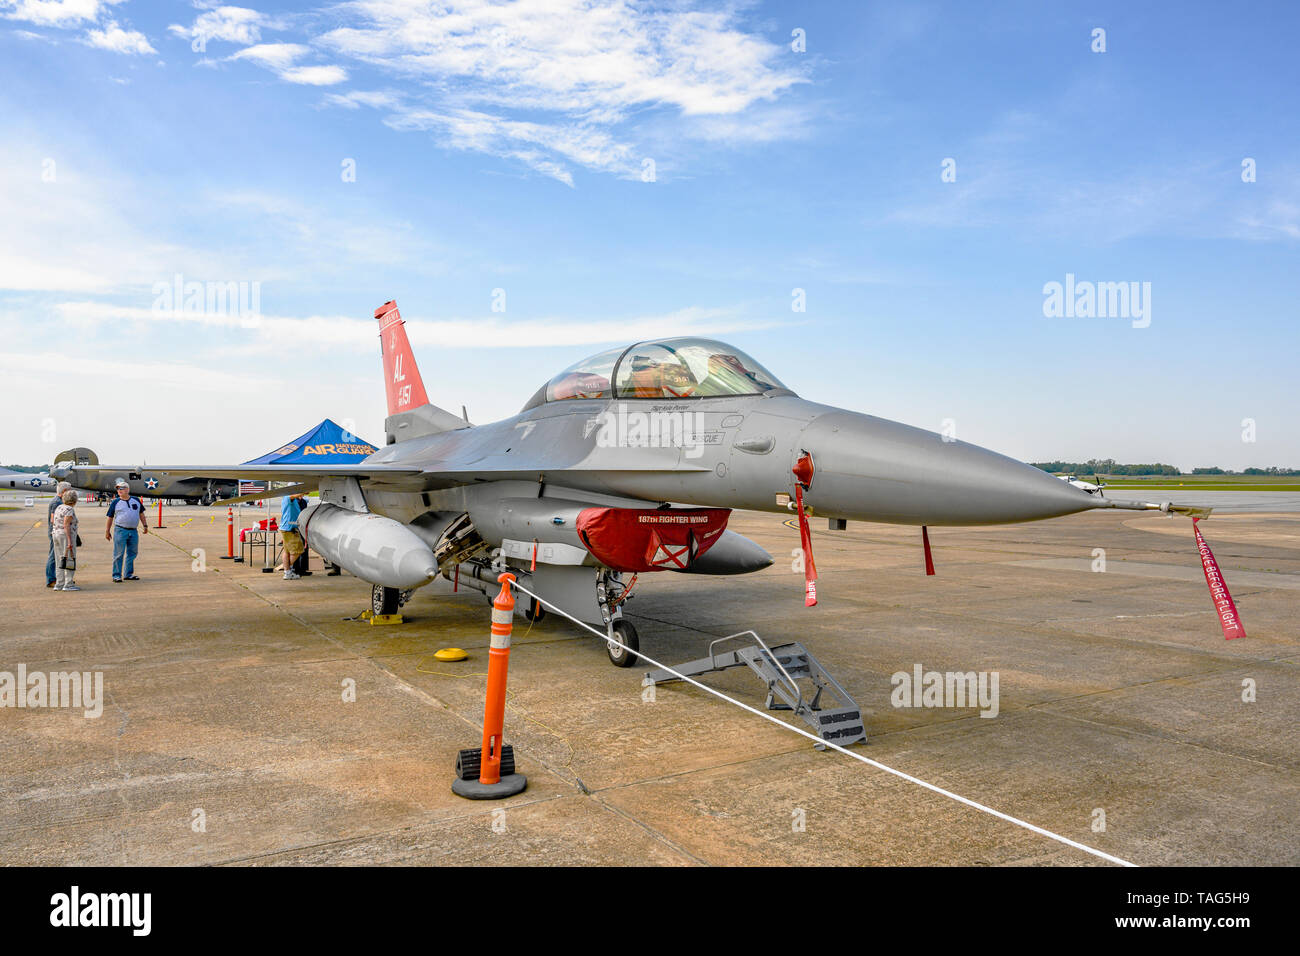 187Th Fighter Wing de la Garde nationale aérienne de l'Alabama, aviateurs, Tuskegee et leur escadron red tail McDonald Douglas F-16 Fighting Falcon de chasse. Banque D'Images